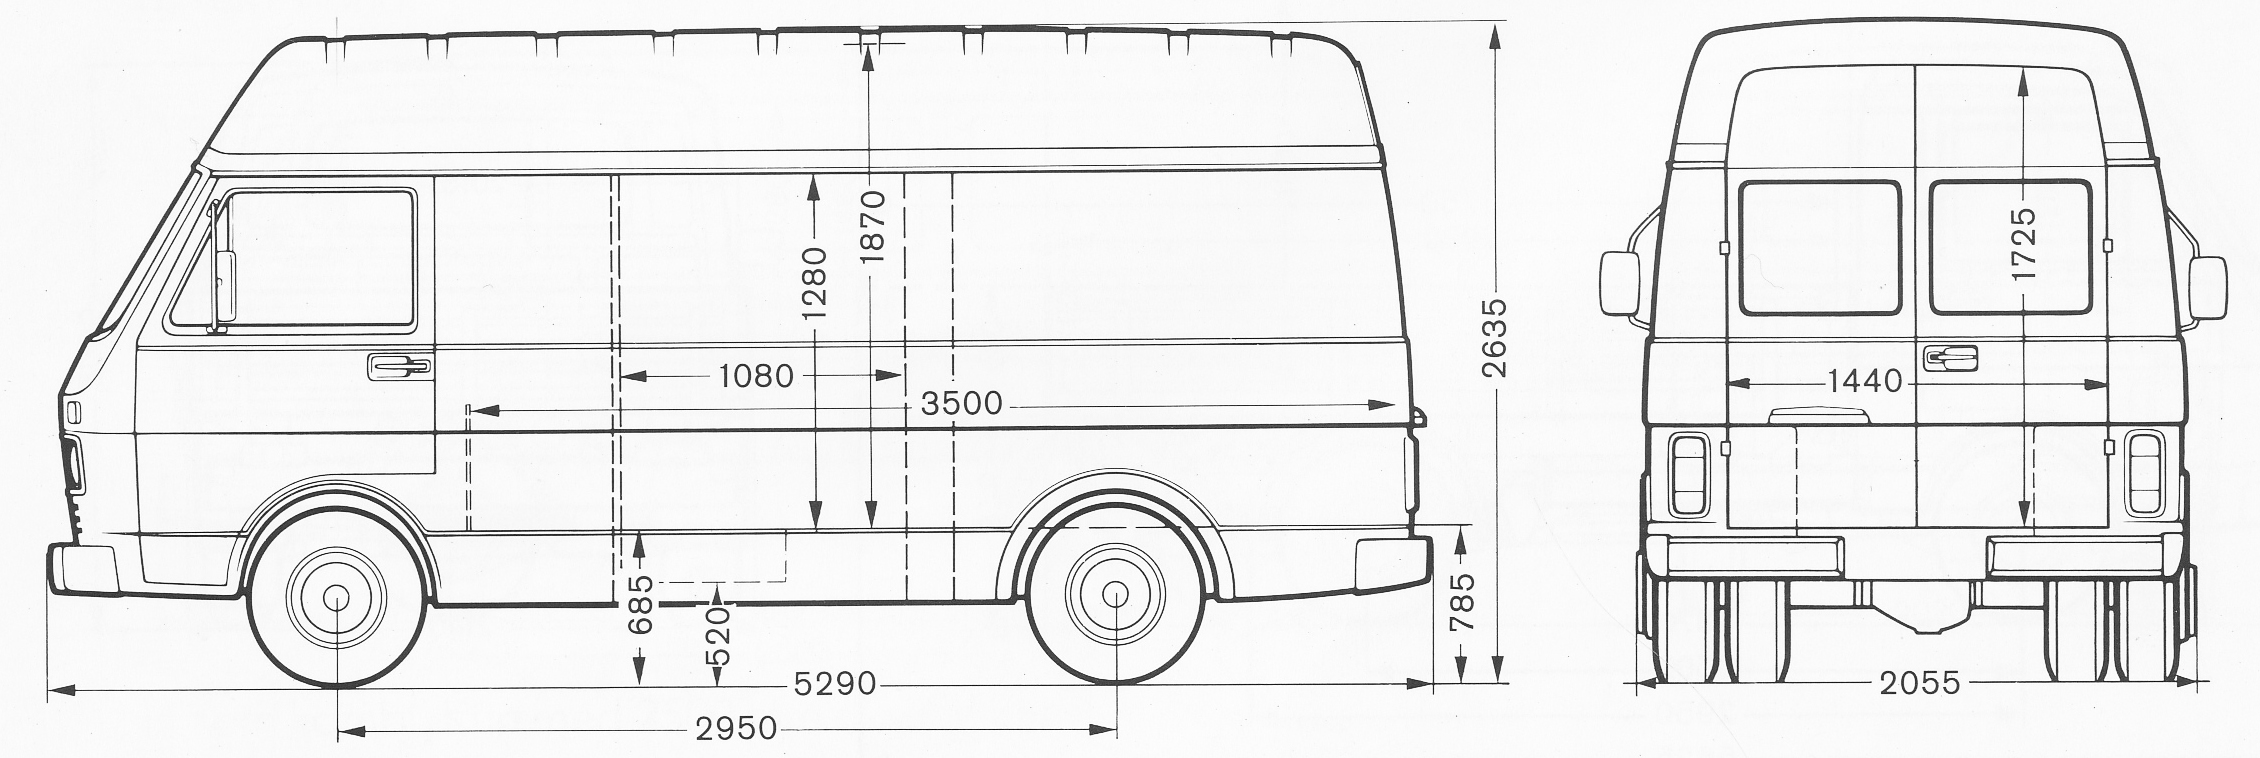 Volkswagen LT blueprint